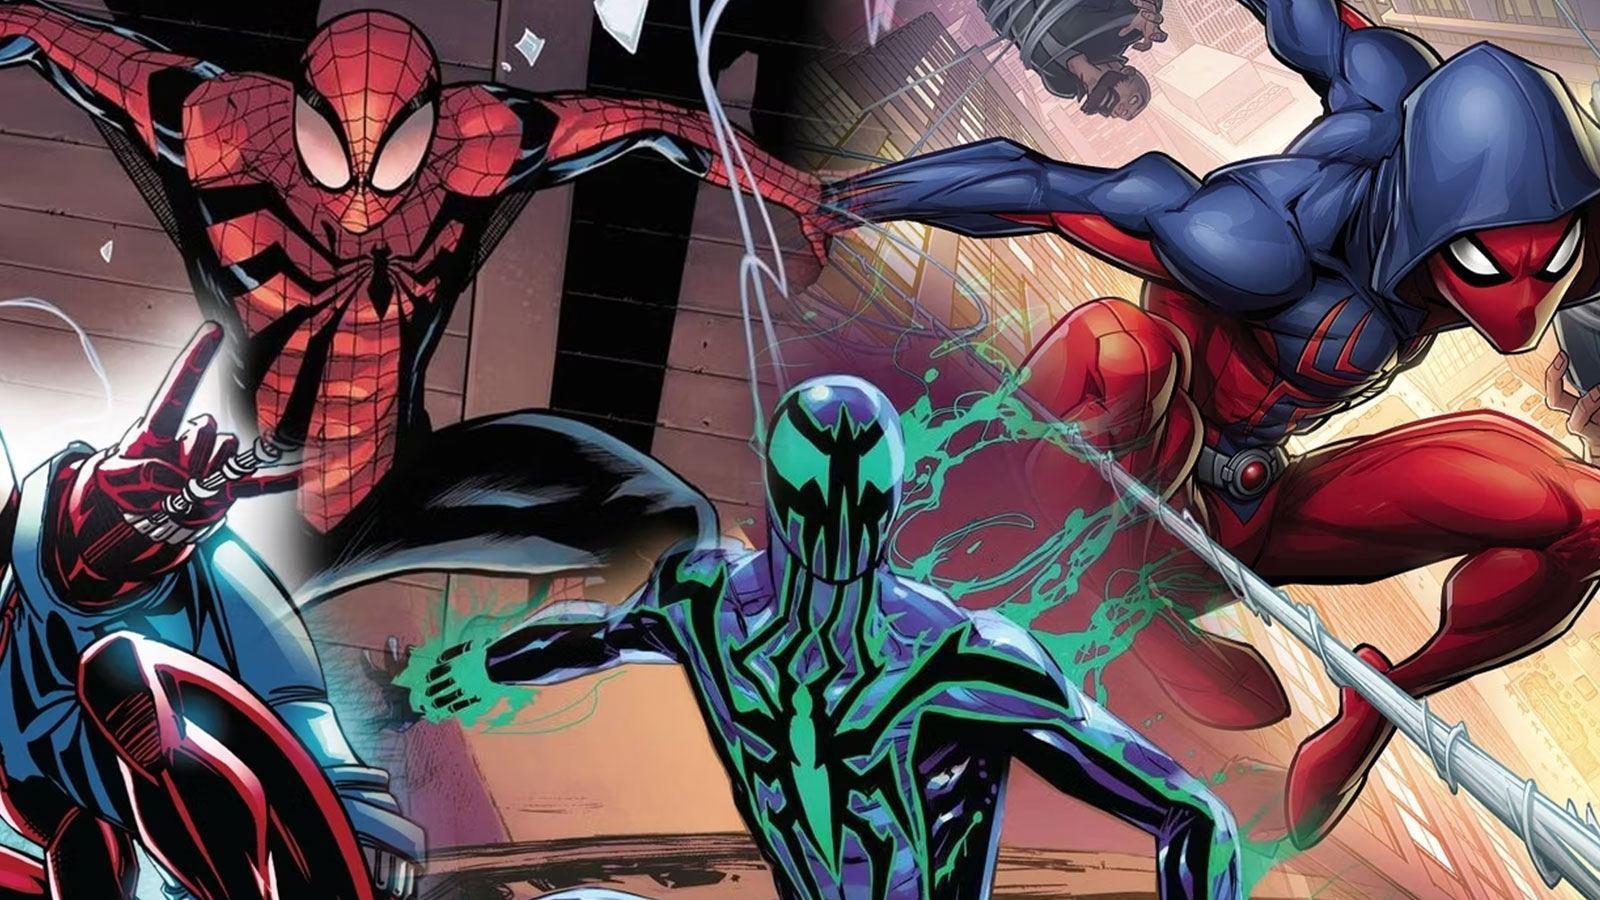 Marvel's Spider-Man 2 - Édition Deluxe numérique